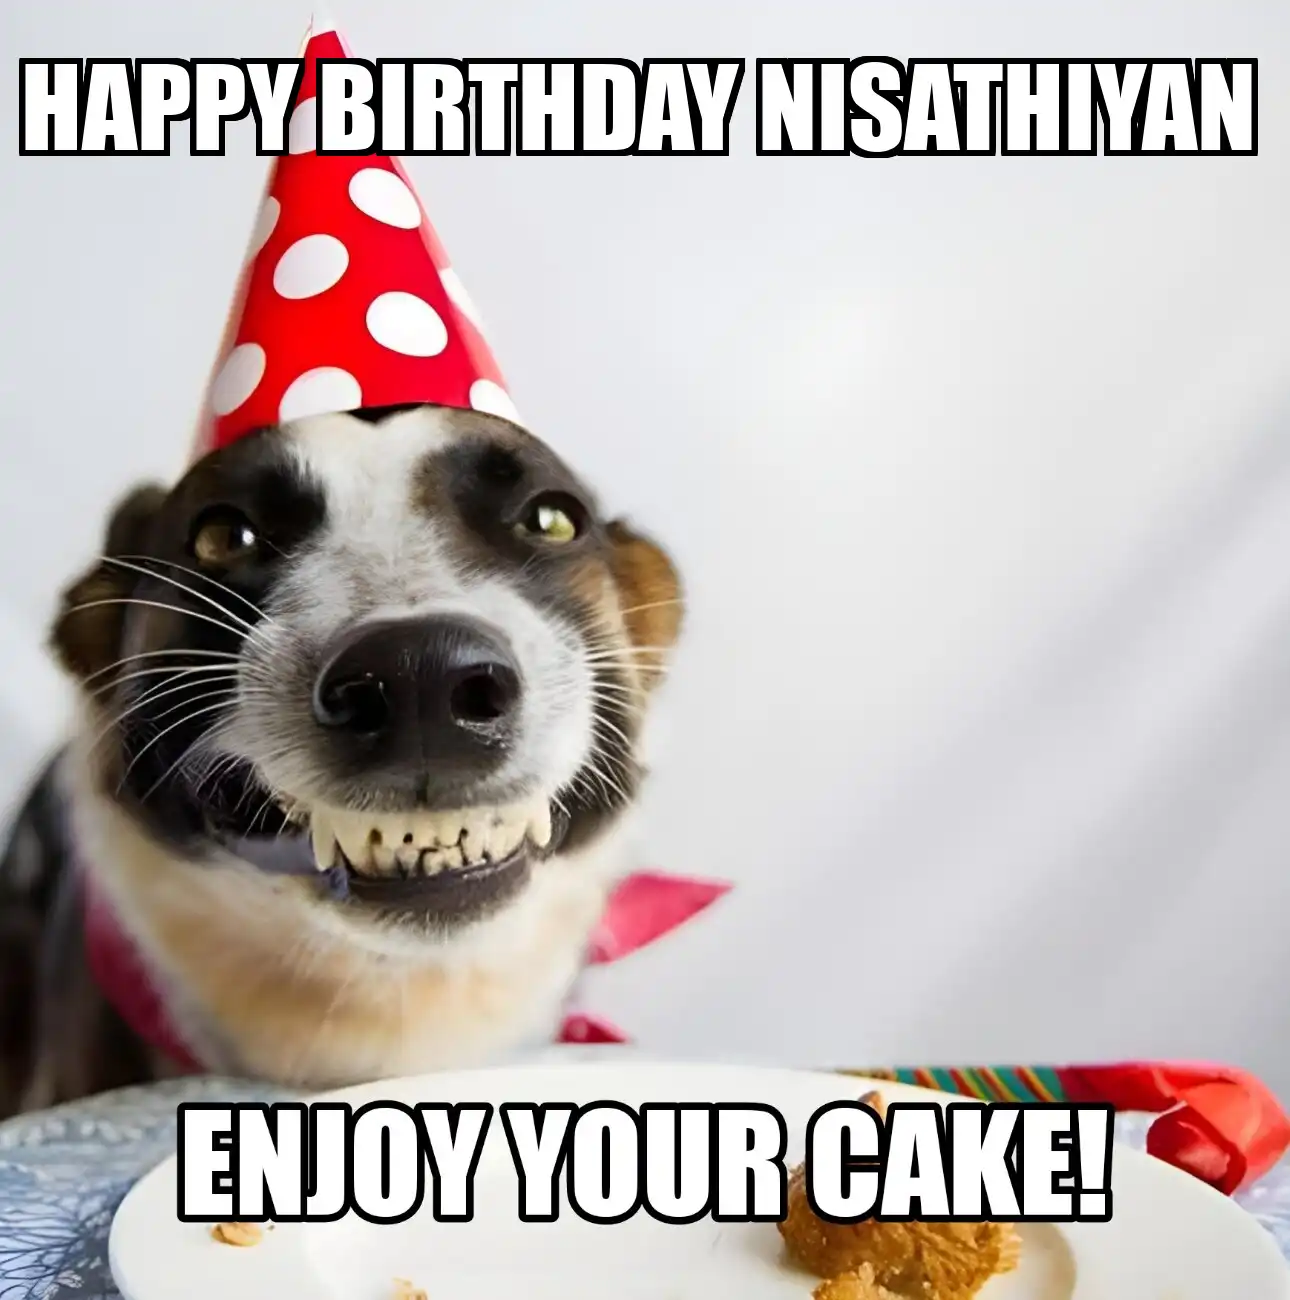 Happy Birthday Nisathiyan Enjoy Your Cake Dog Meme